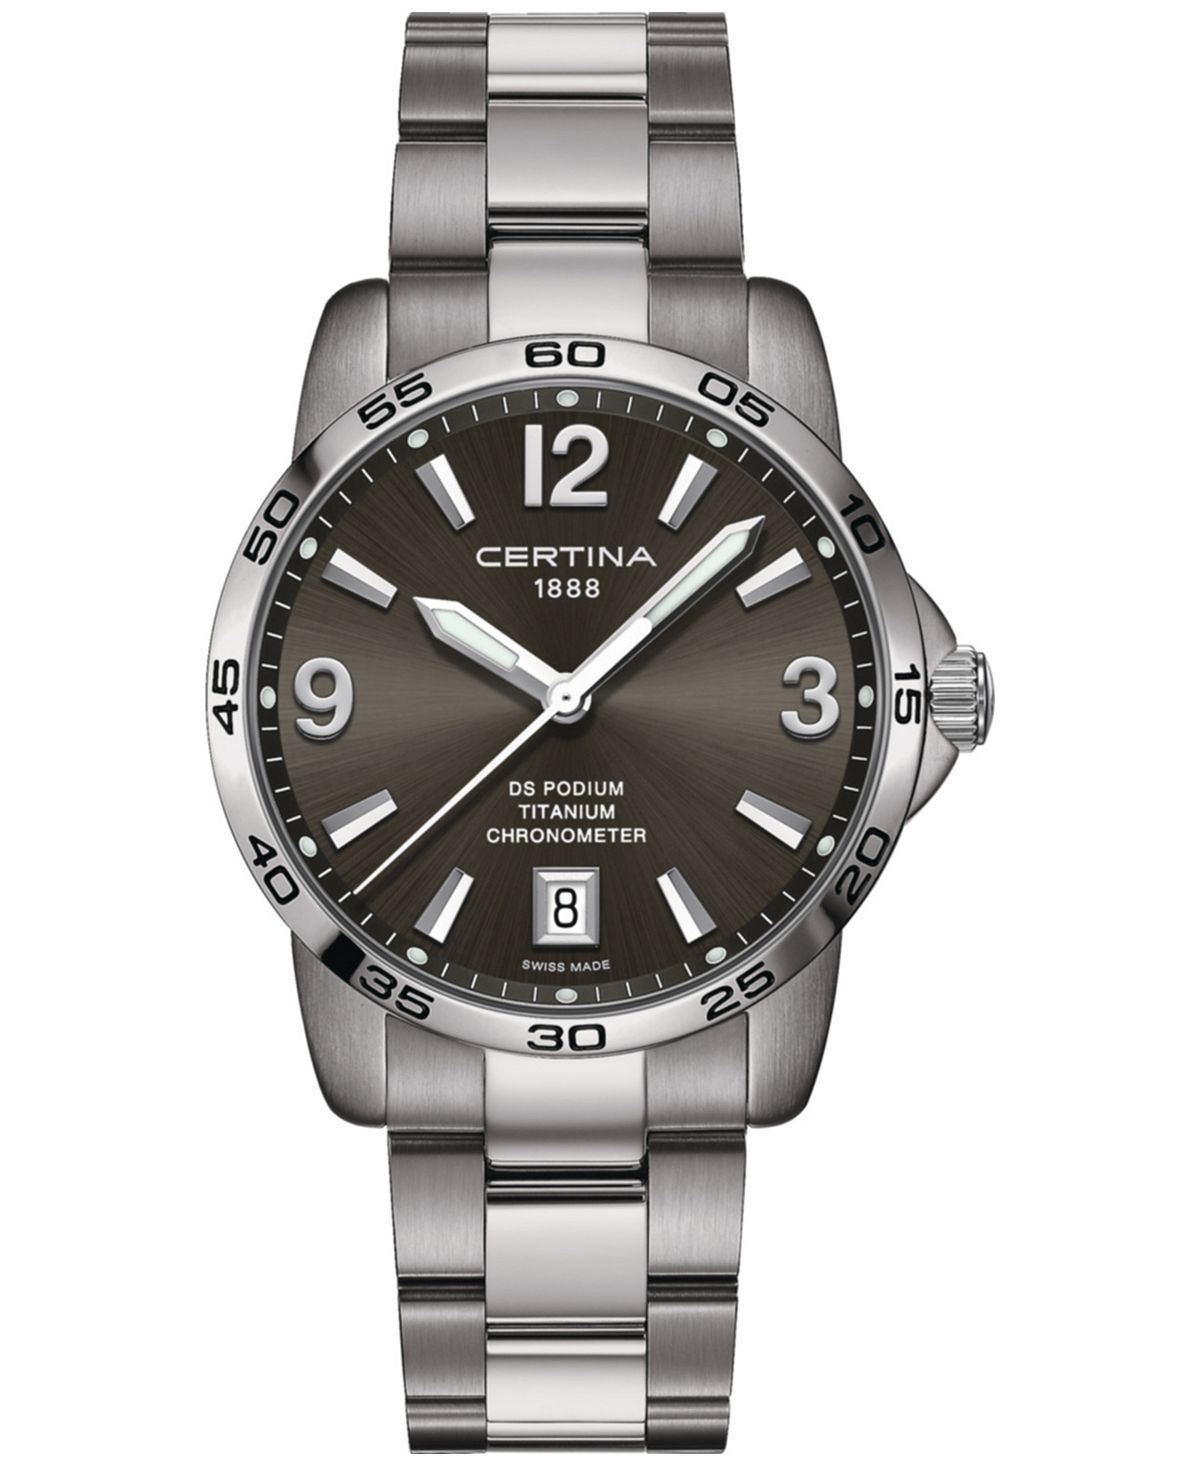 Мужские швейцарские часы DS Podium с титановым браслетом, 40 мм Certina certina certina ds podium chronograph 1 10 sec c0344171109700